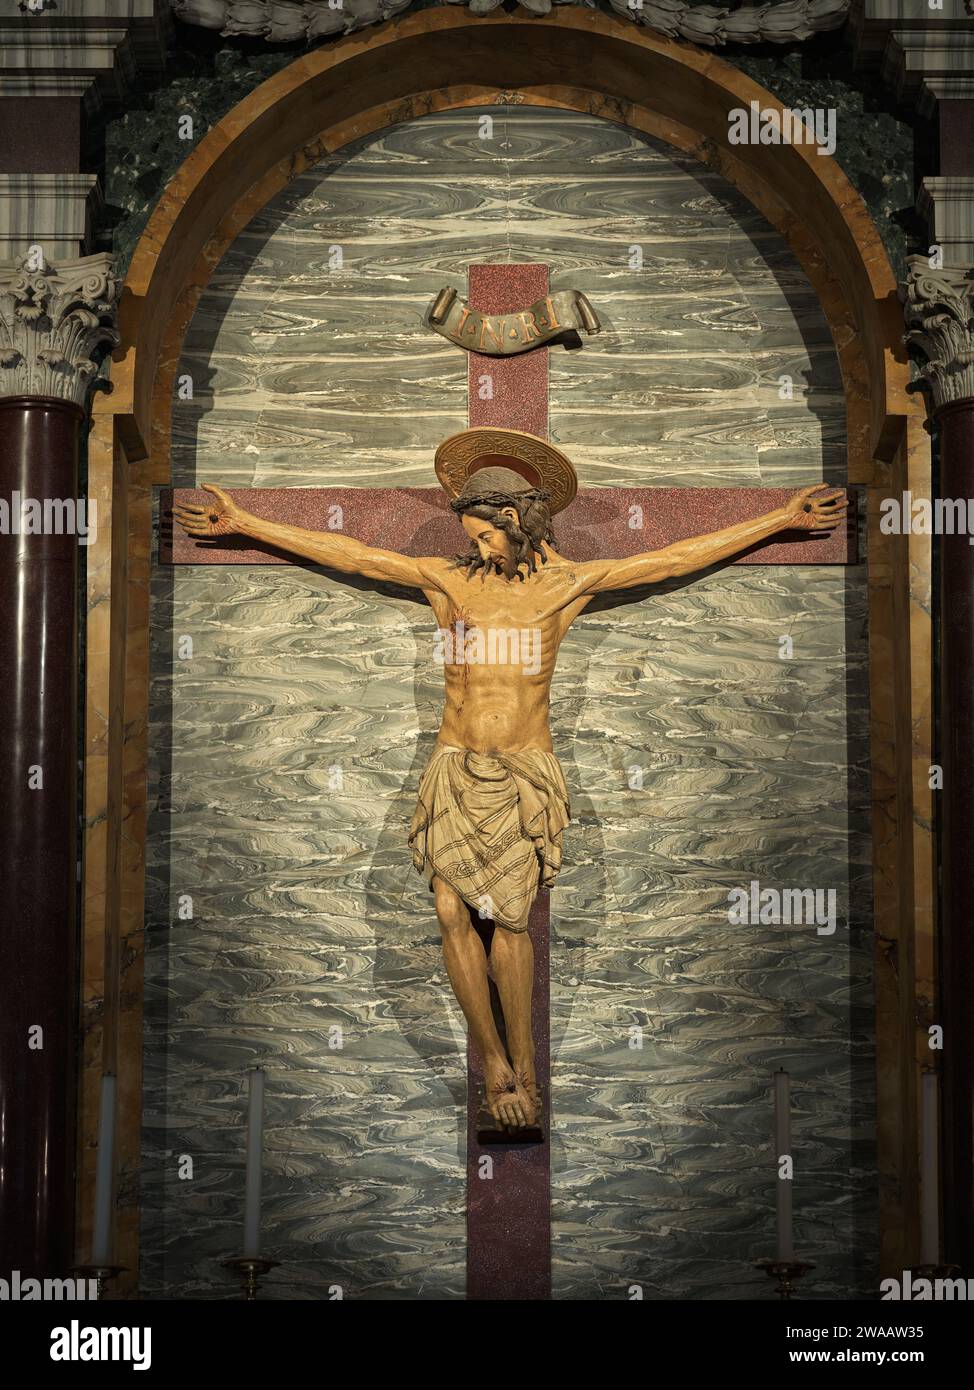 Crucifix dans la basilique papale de Santa Maria Maggiore (Sainte Marie majeure) dédié à la vierge Marie mère de Jésus, Rome, Italie. Banque D'Images